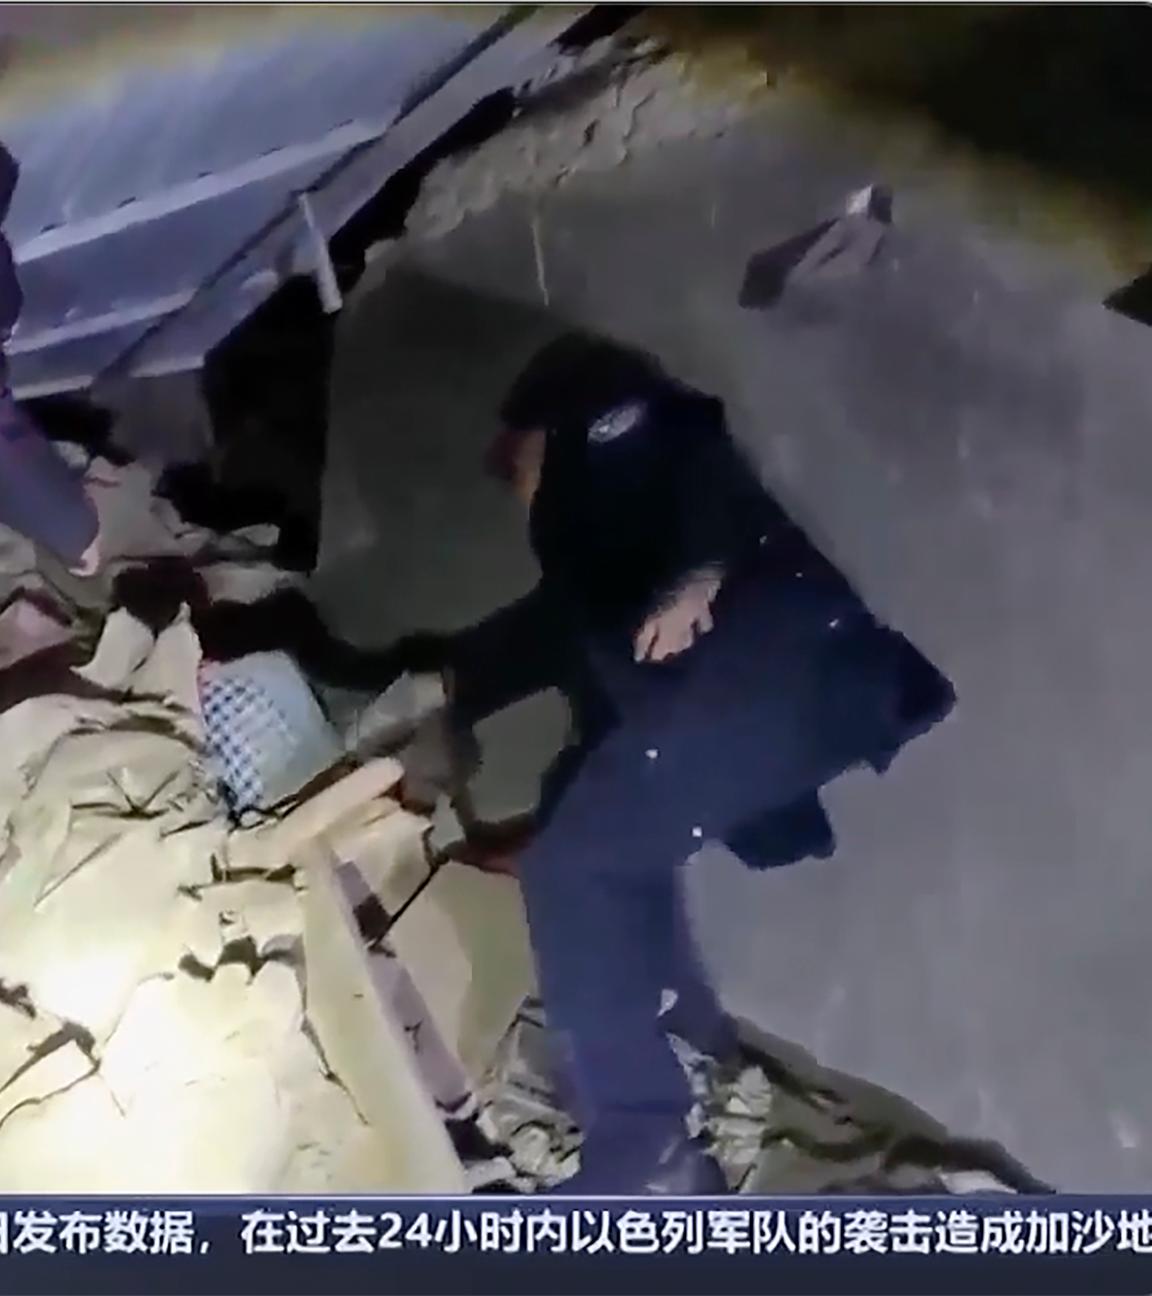 China, Xinjiang: Auf diesem Bild aus einem Video des chinesischen Fernsehsenders CCTV arbeiten Retter in der Nähe von Trümmern nahc einem Erdbeben in der kirgisischen autonomen Präfektur Kizilsu in Chinas westlicher Region Xinjiang.